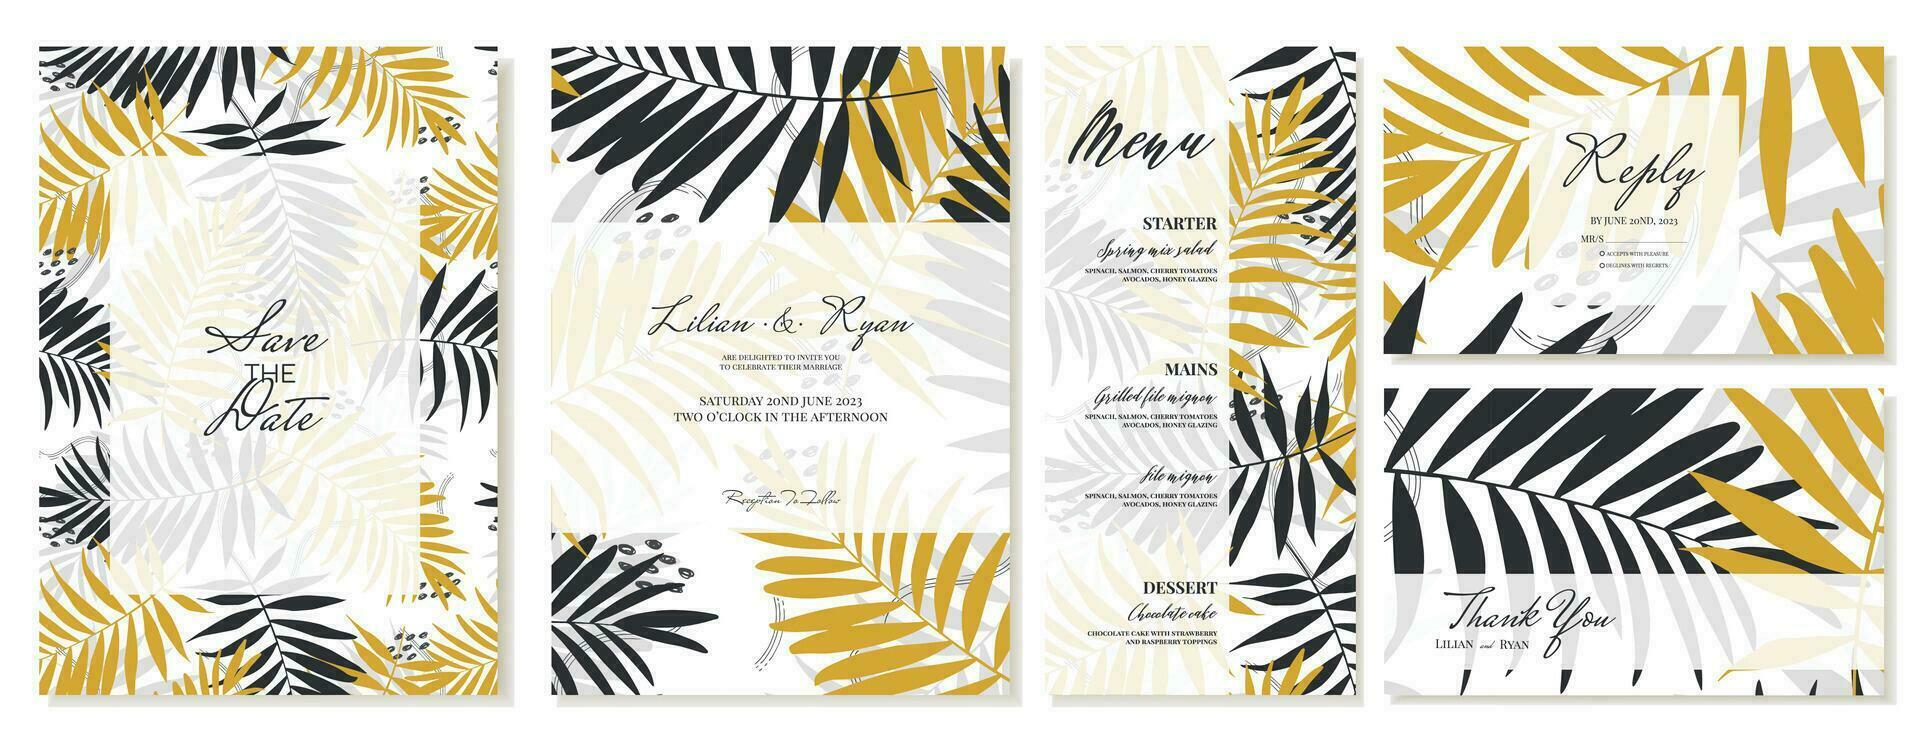 bröllop inbjudan med tacka du kort, meny och rsvp. sommar tema, handflatan löv, tropisk stil. vektor mall.